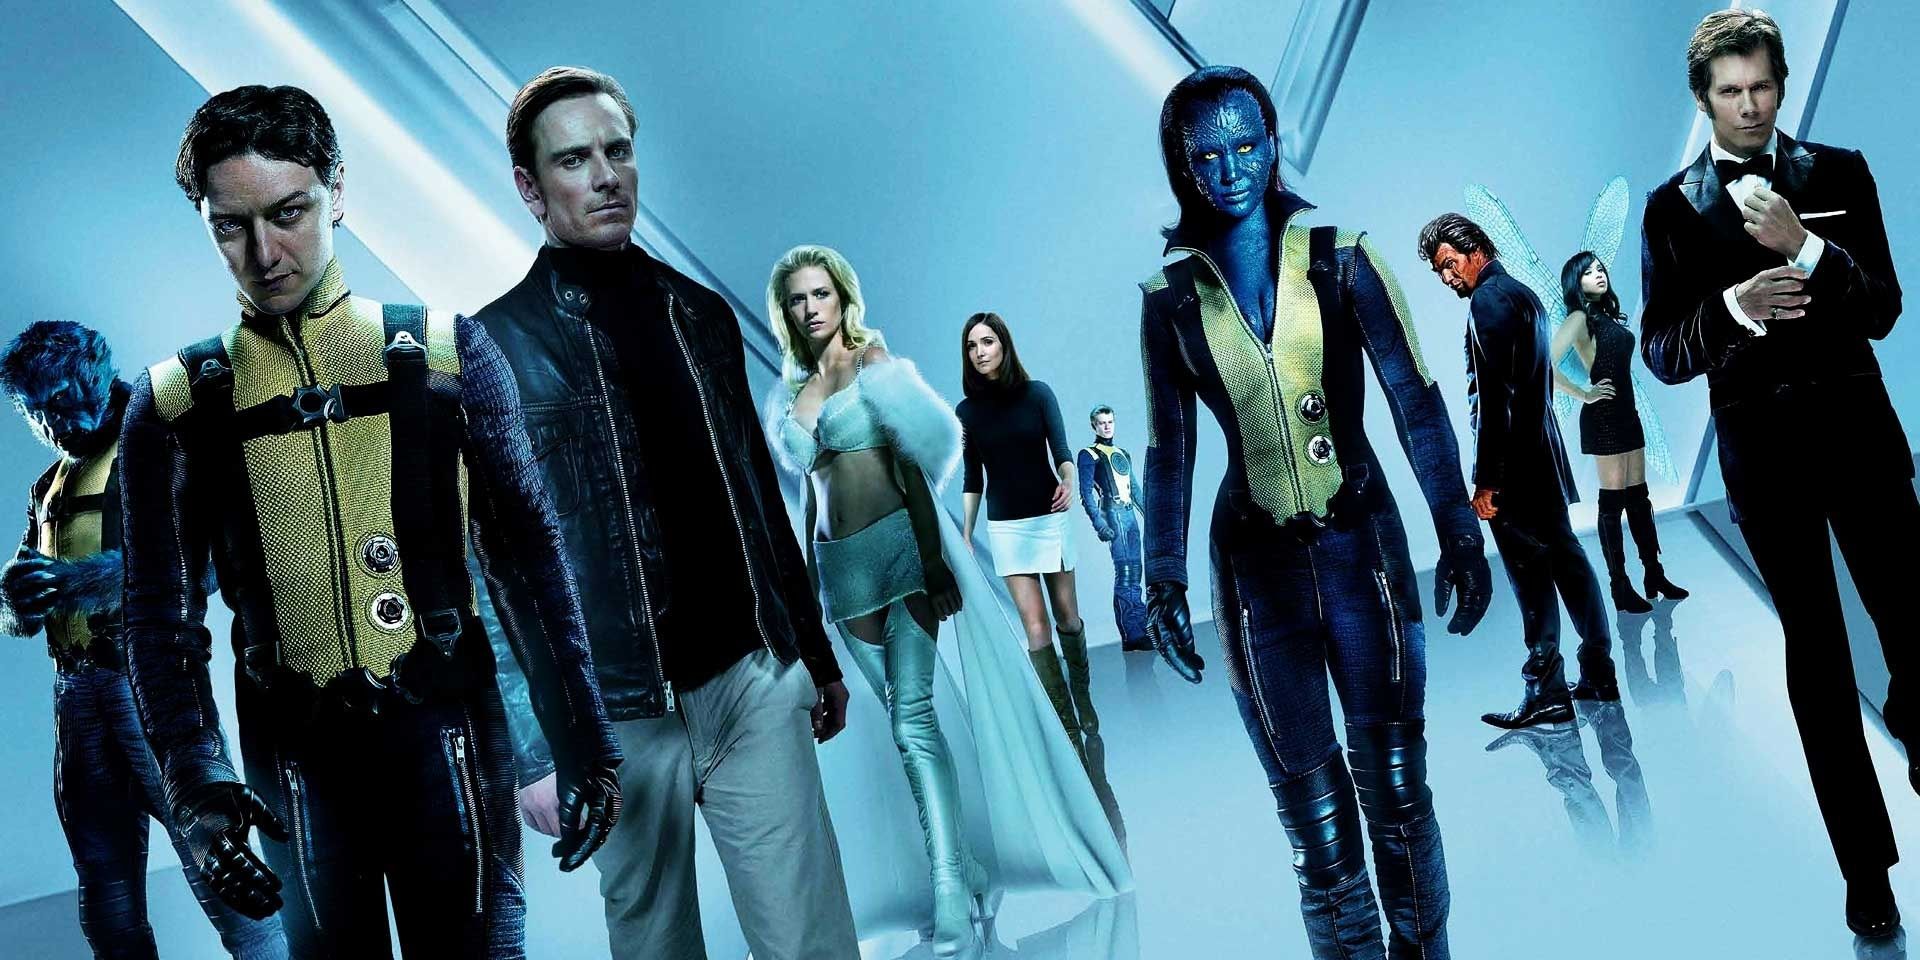 The cast of X-Men First Class